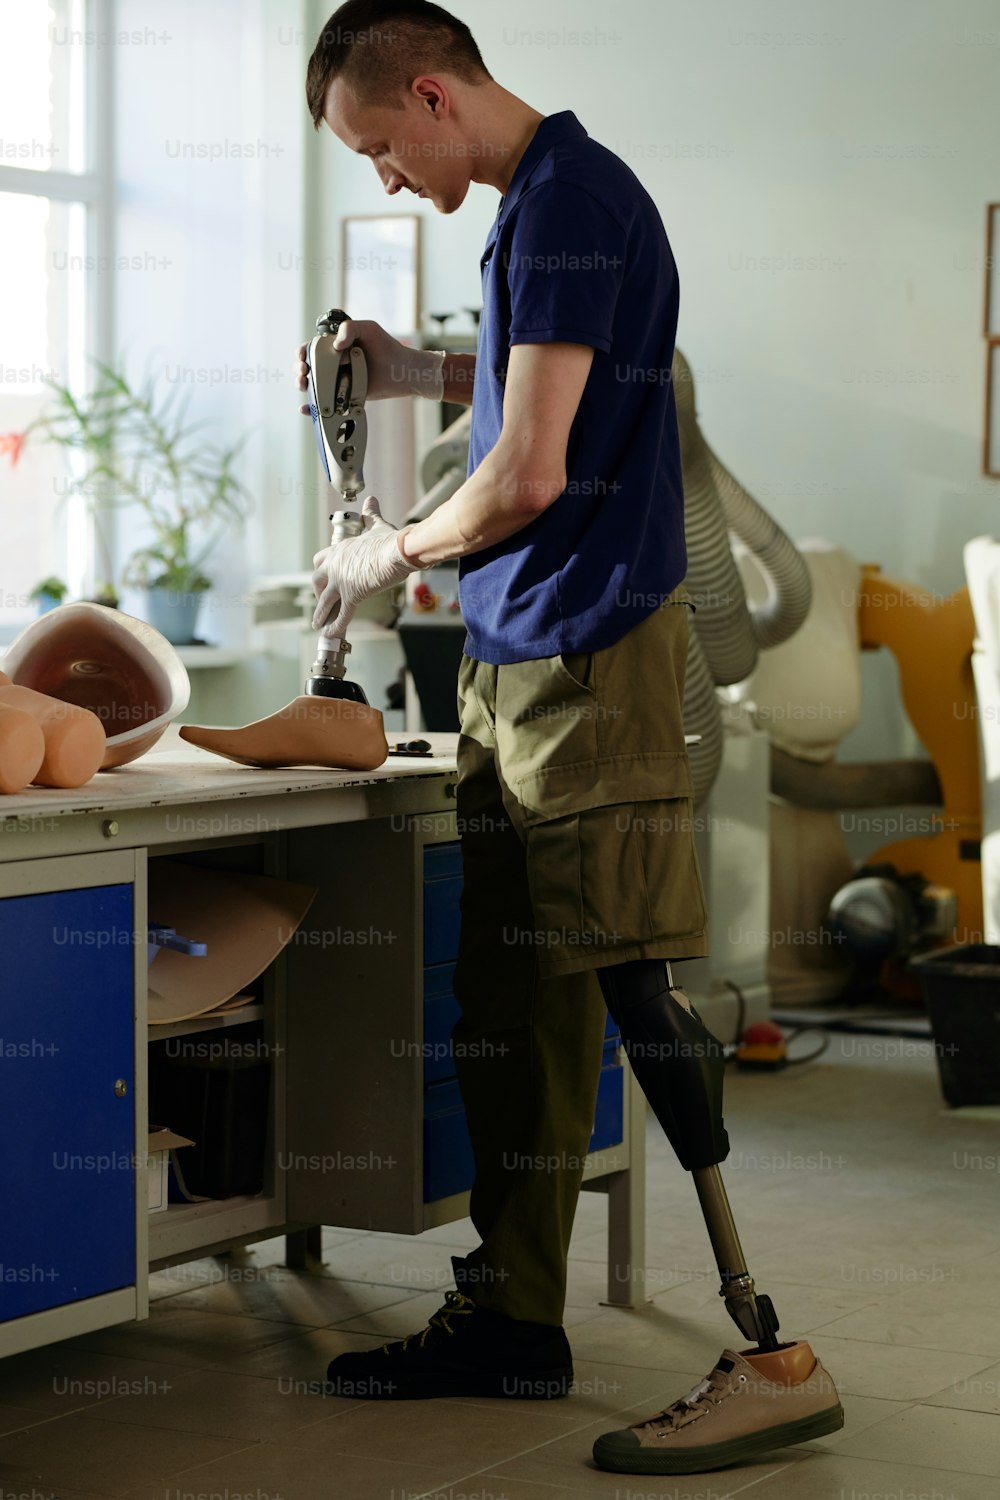 Arbeiter einer modernen Prothesenfabrik montiert neue künstliche Gliedmaßen und fügt zwei Teile des Unterschenkelteils zusammen